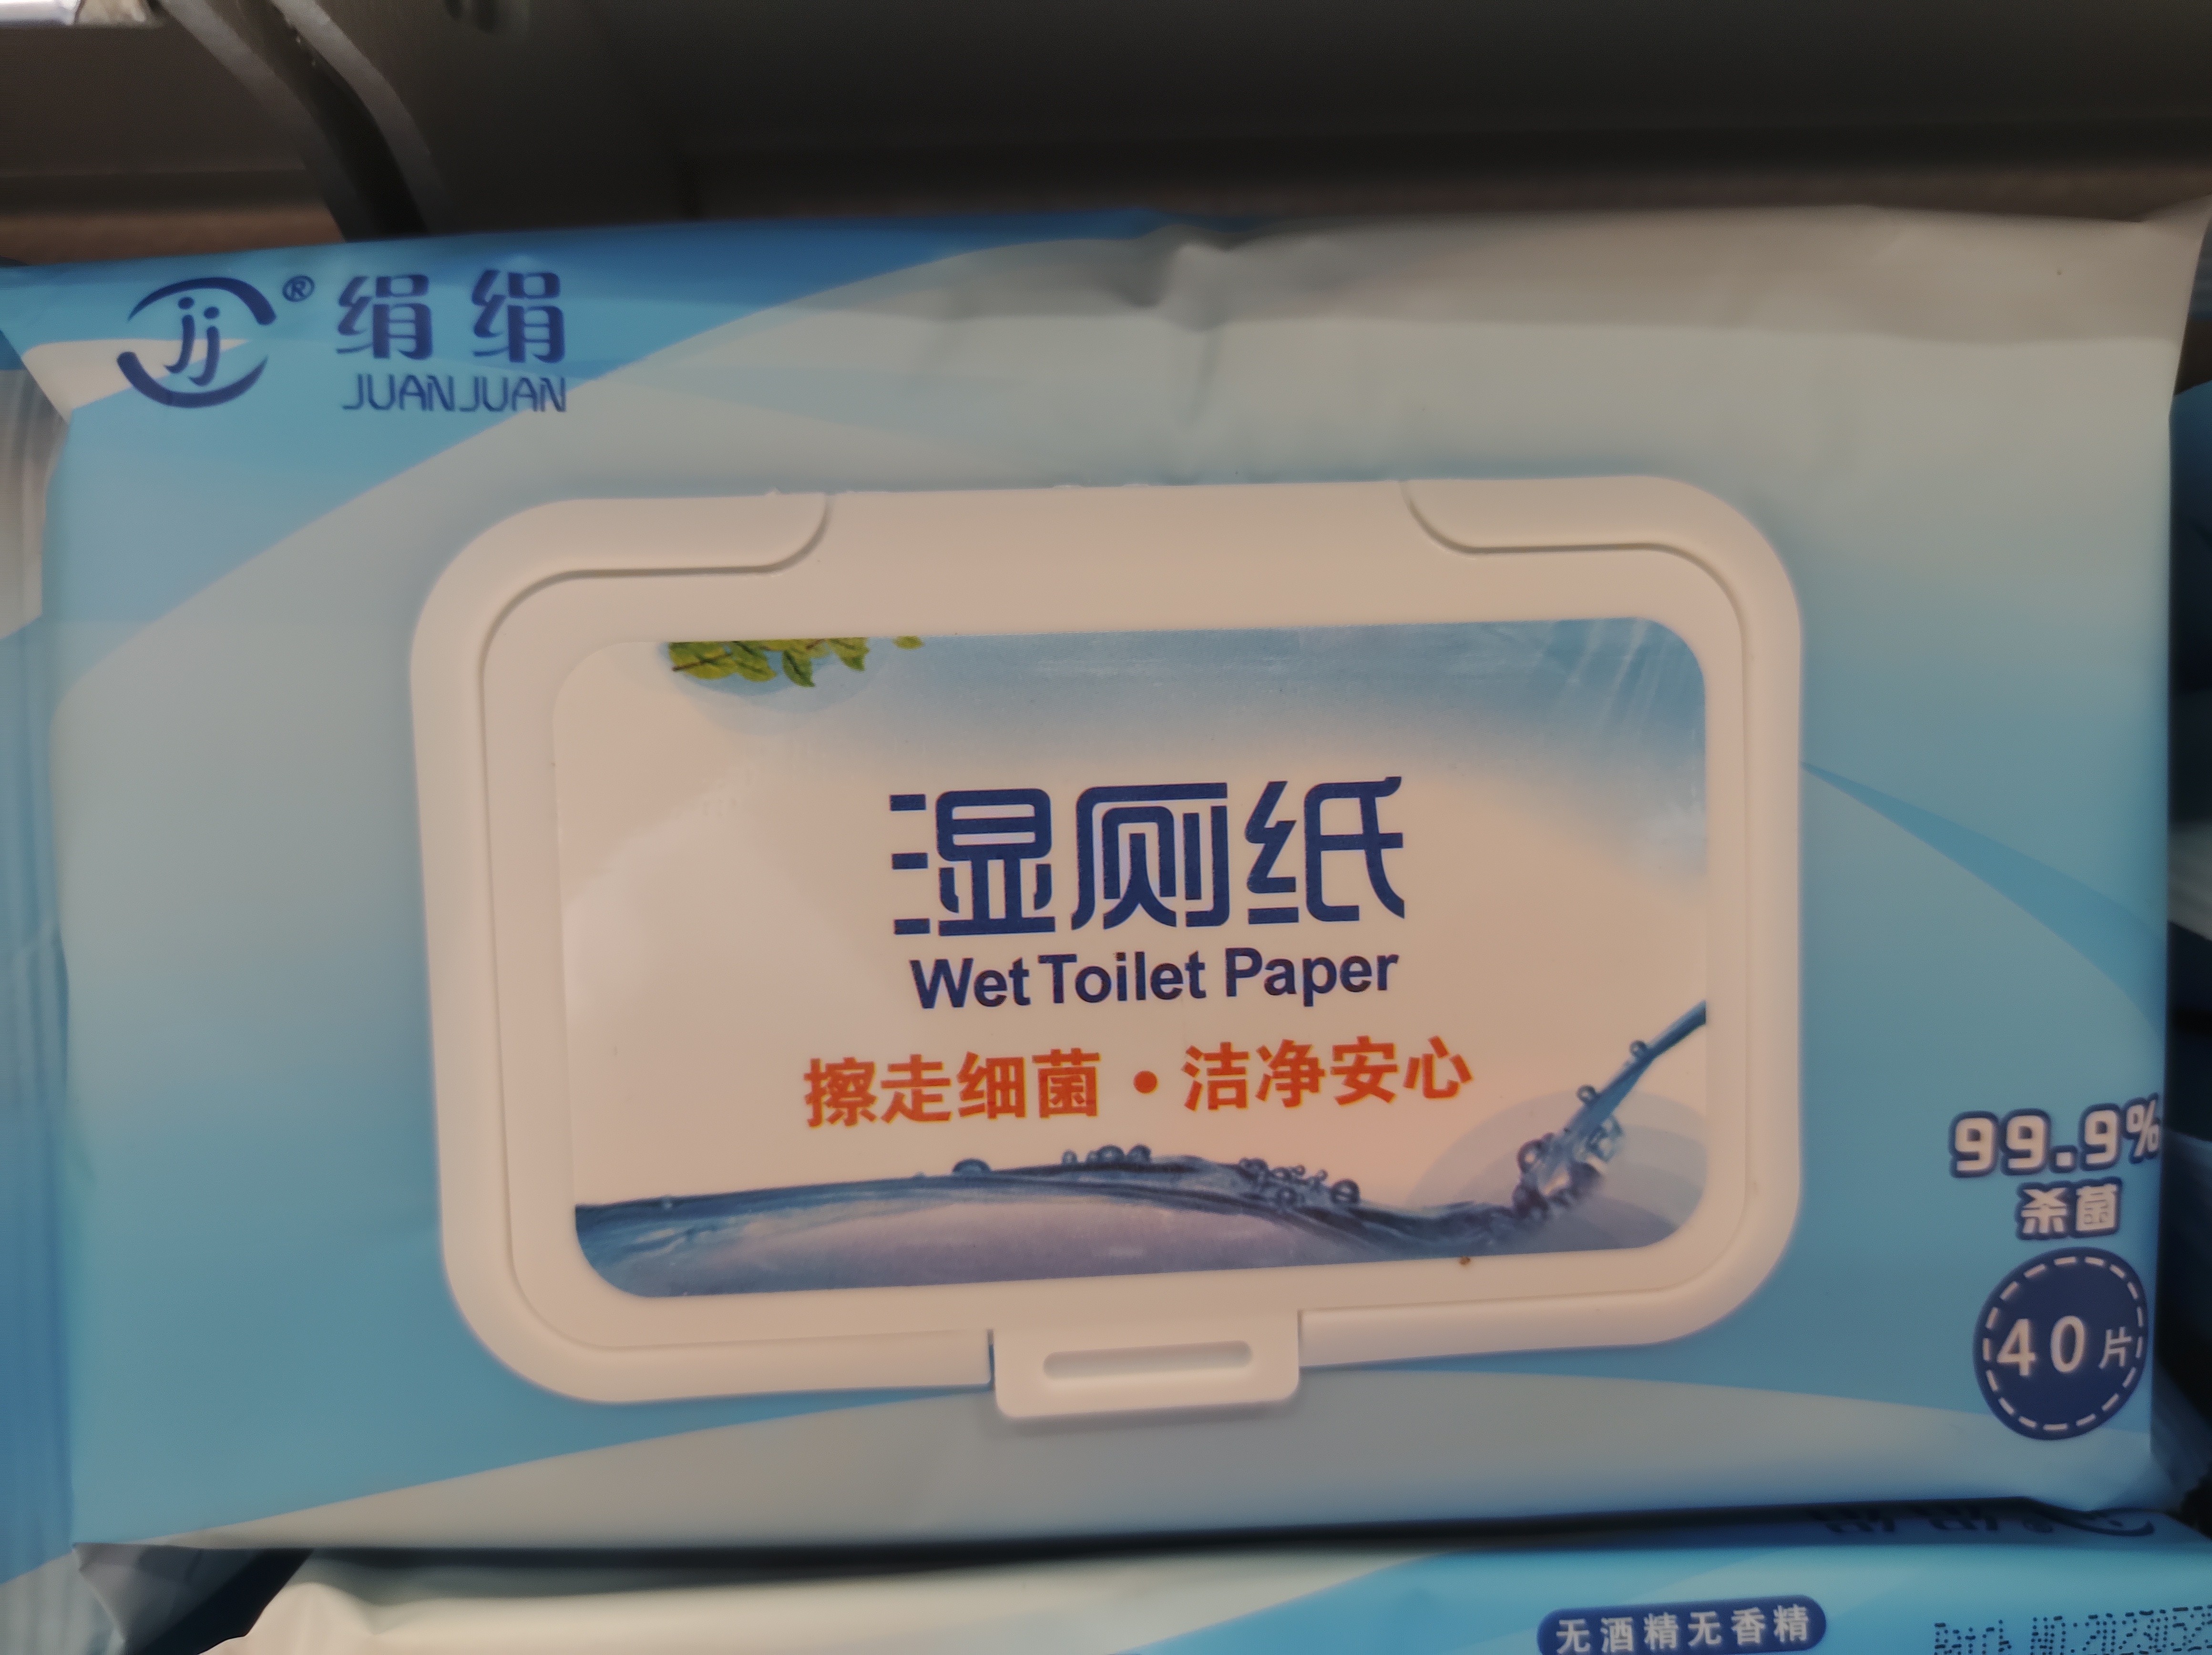 juanjuan-wet-toilet-paper